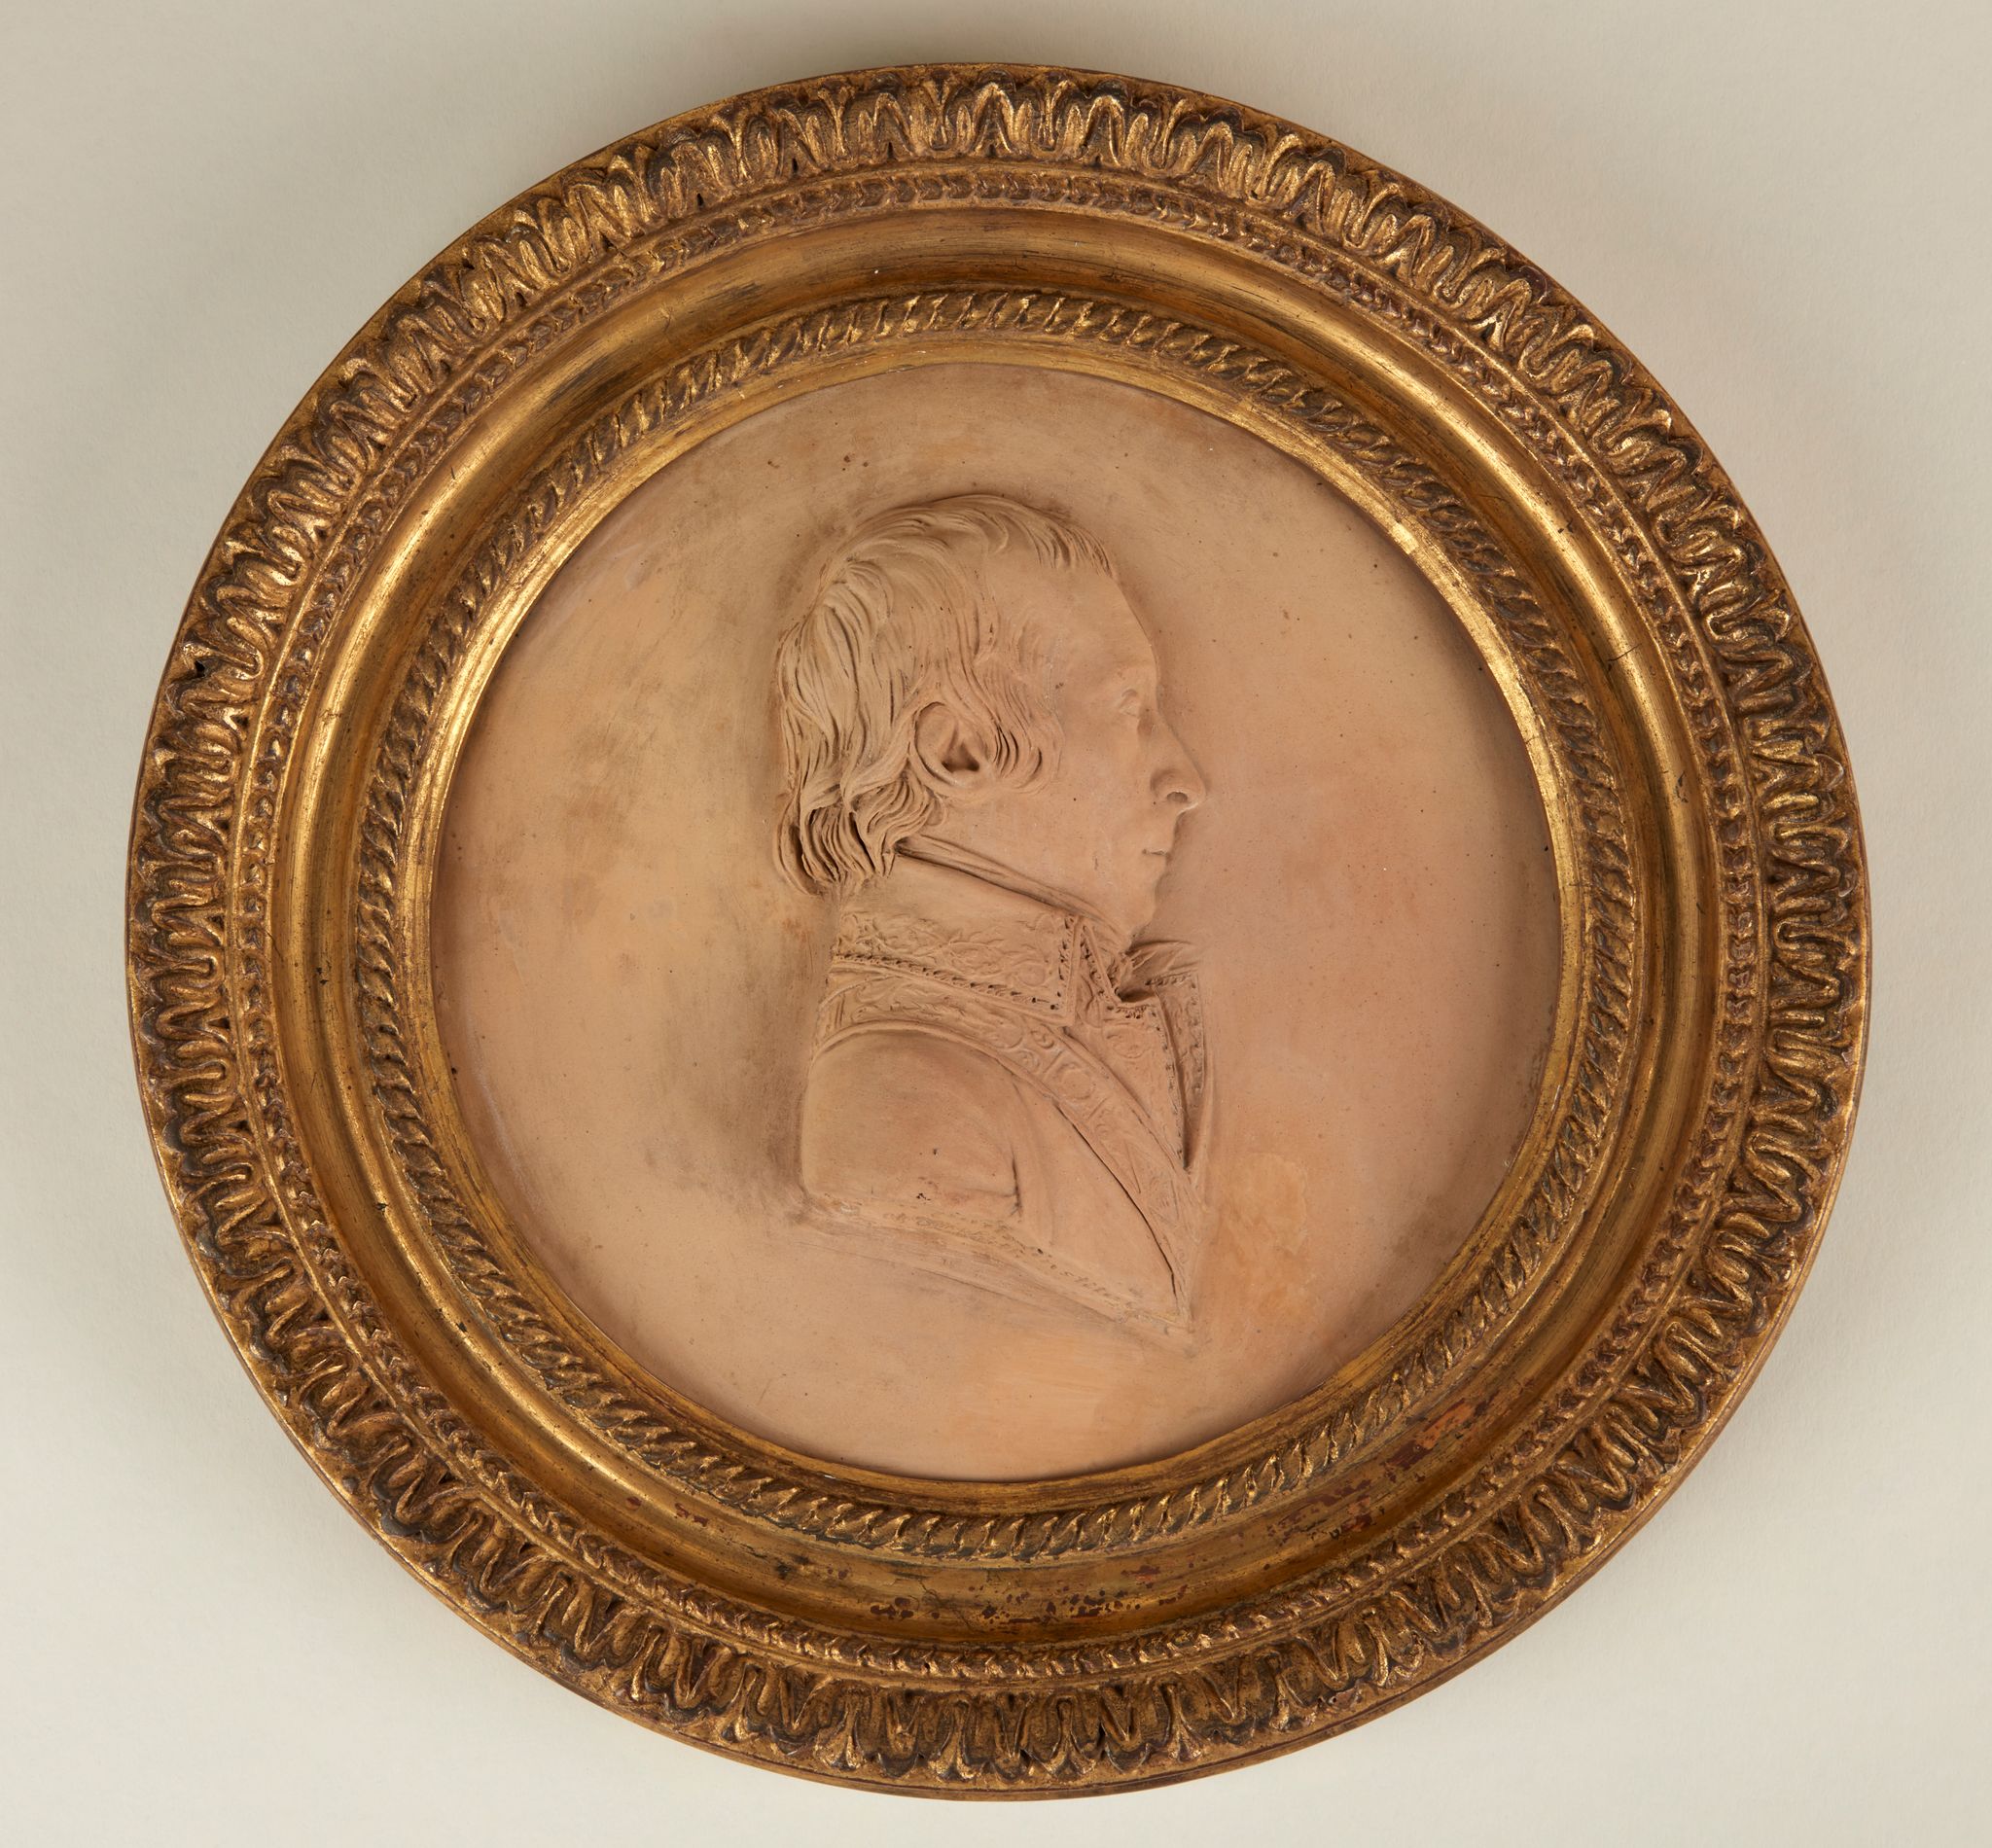 Portrait de Jean-François Rewbell (1747-1807), membre du Directoire